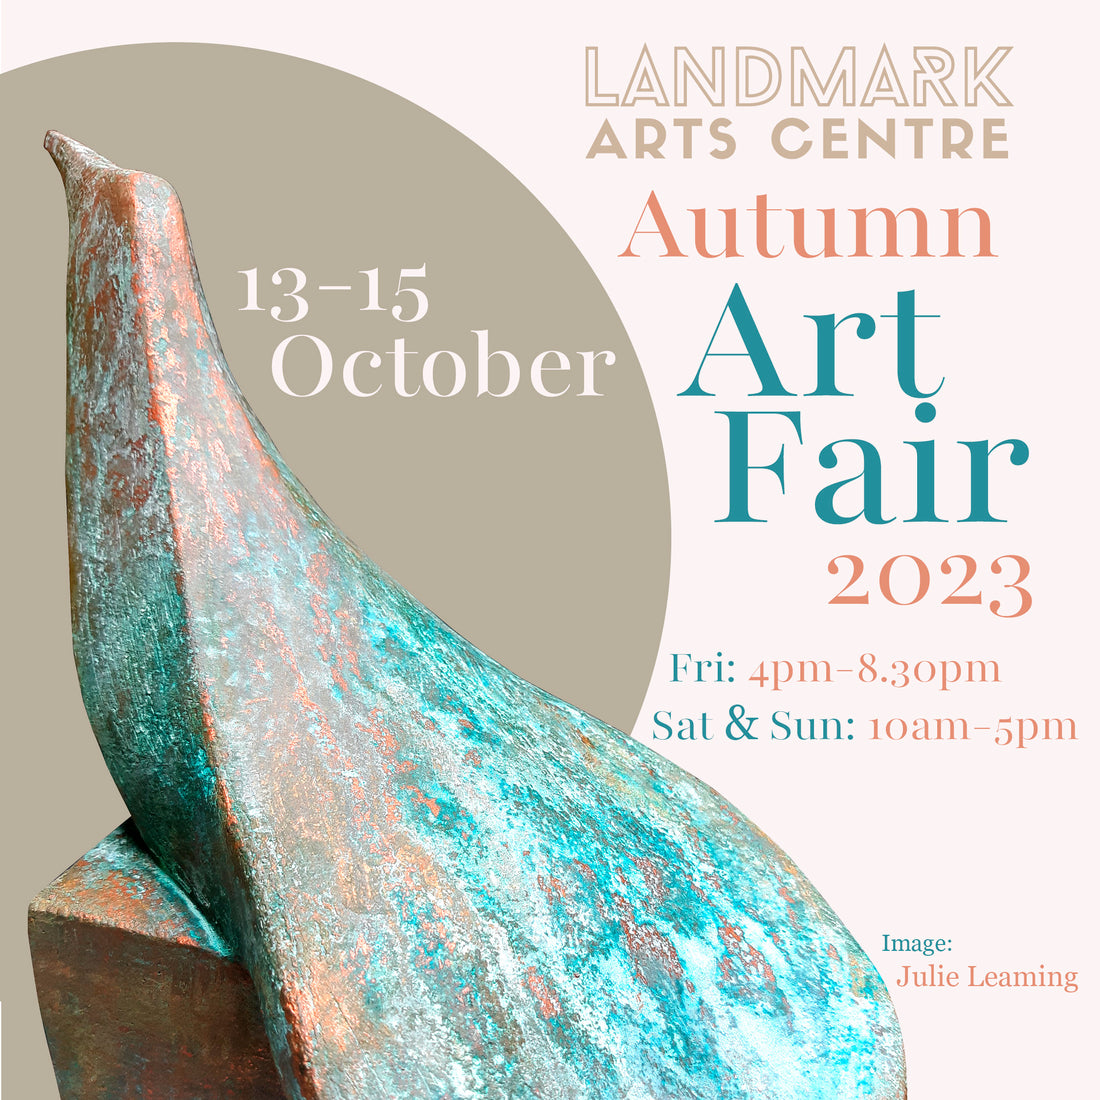 OCT 2023: Landmark Arts Centre Autumn Fair